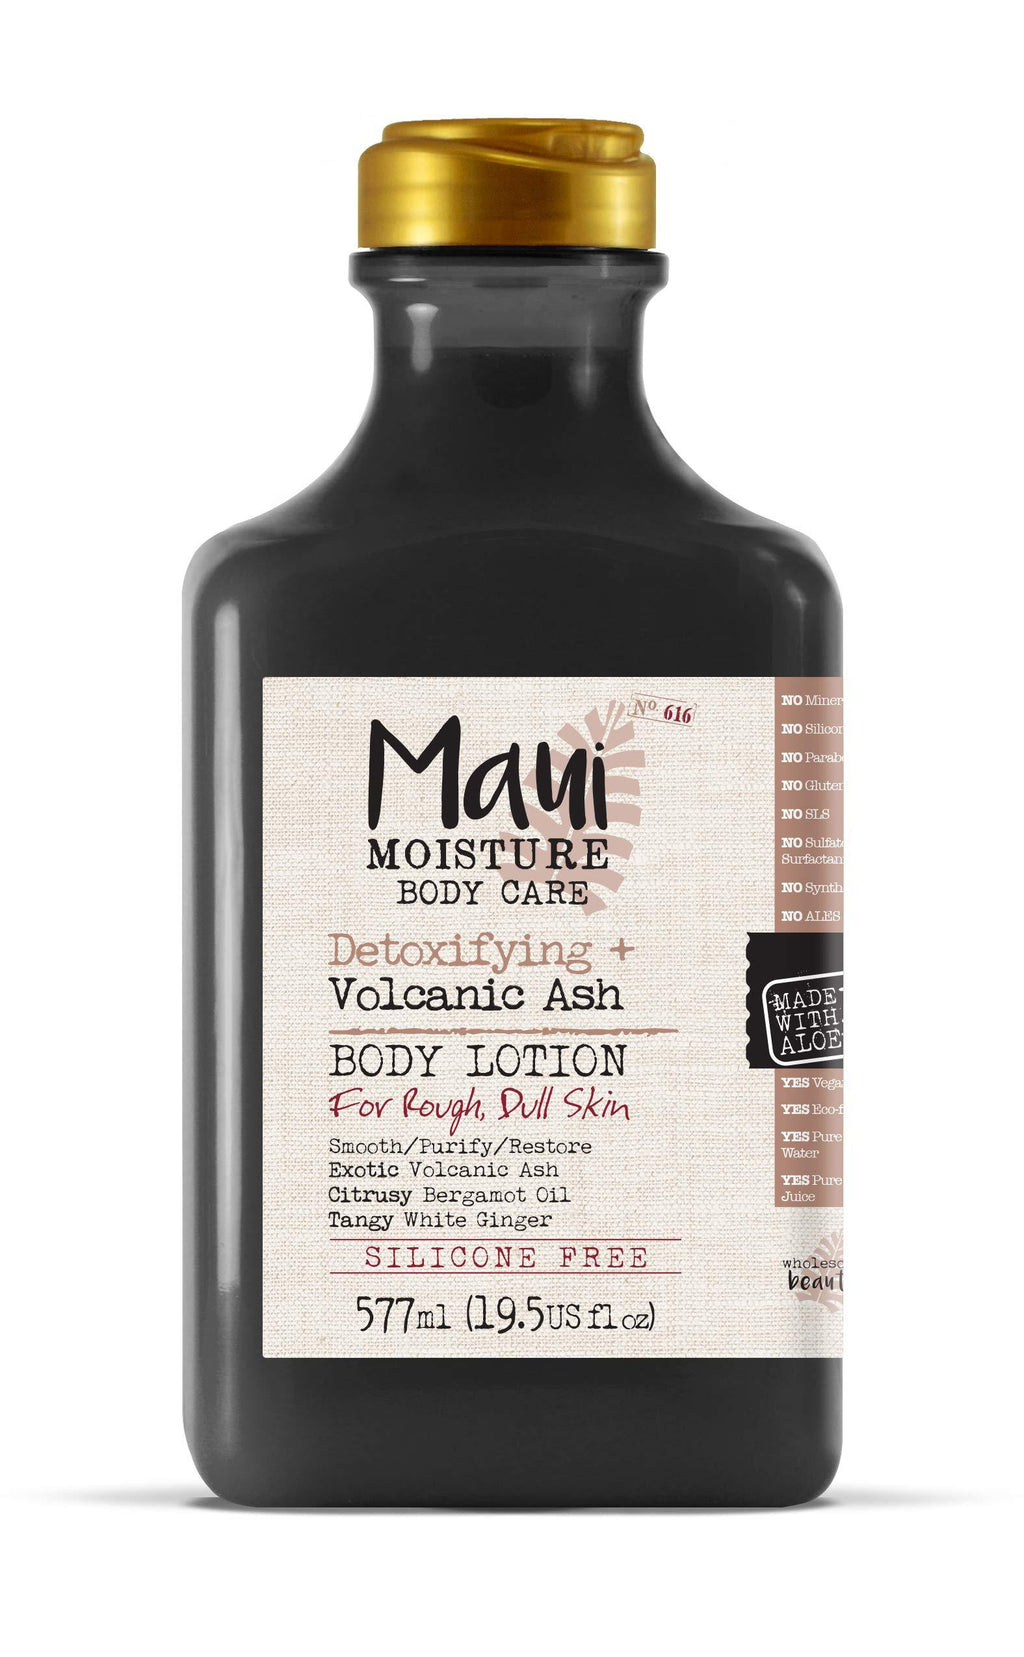 Maui Moisture Body Care Detoxifying Volcanic Ash Body Lotion, 19.5 Fl Oz Bottle (18283) 19.5 Fl Oz (Pack of 1) - BeesActive Australia